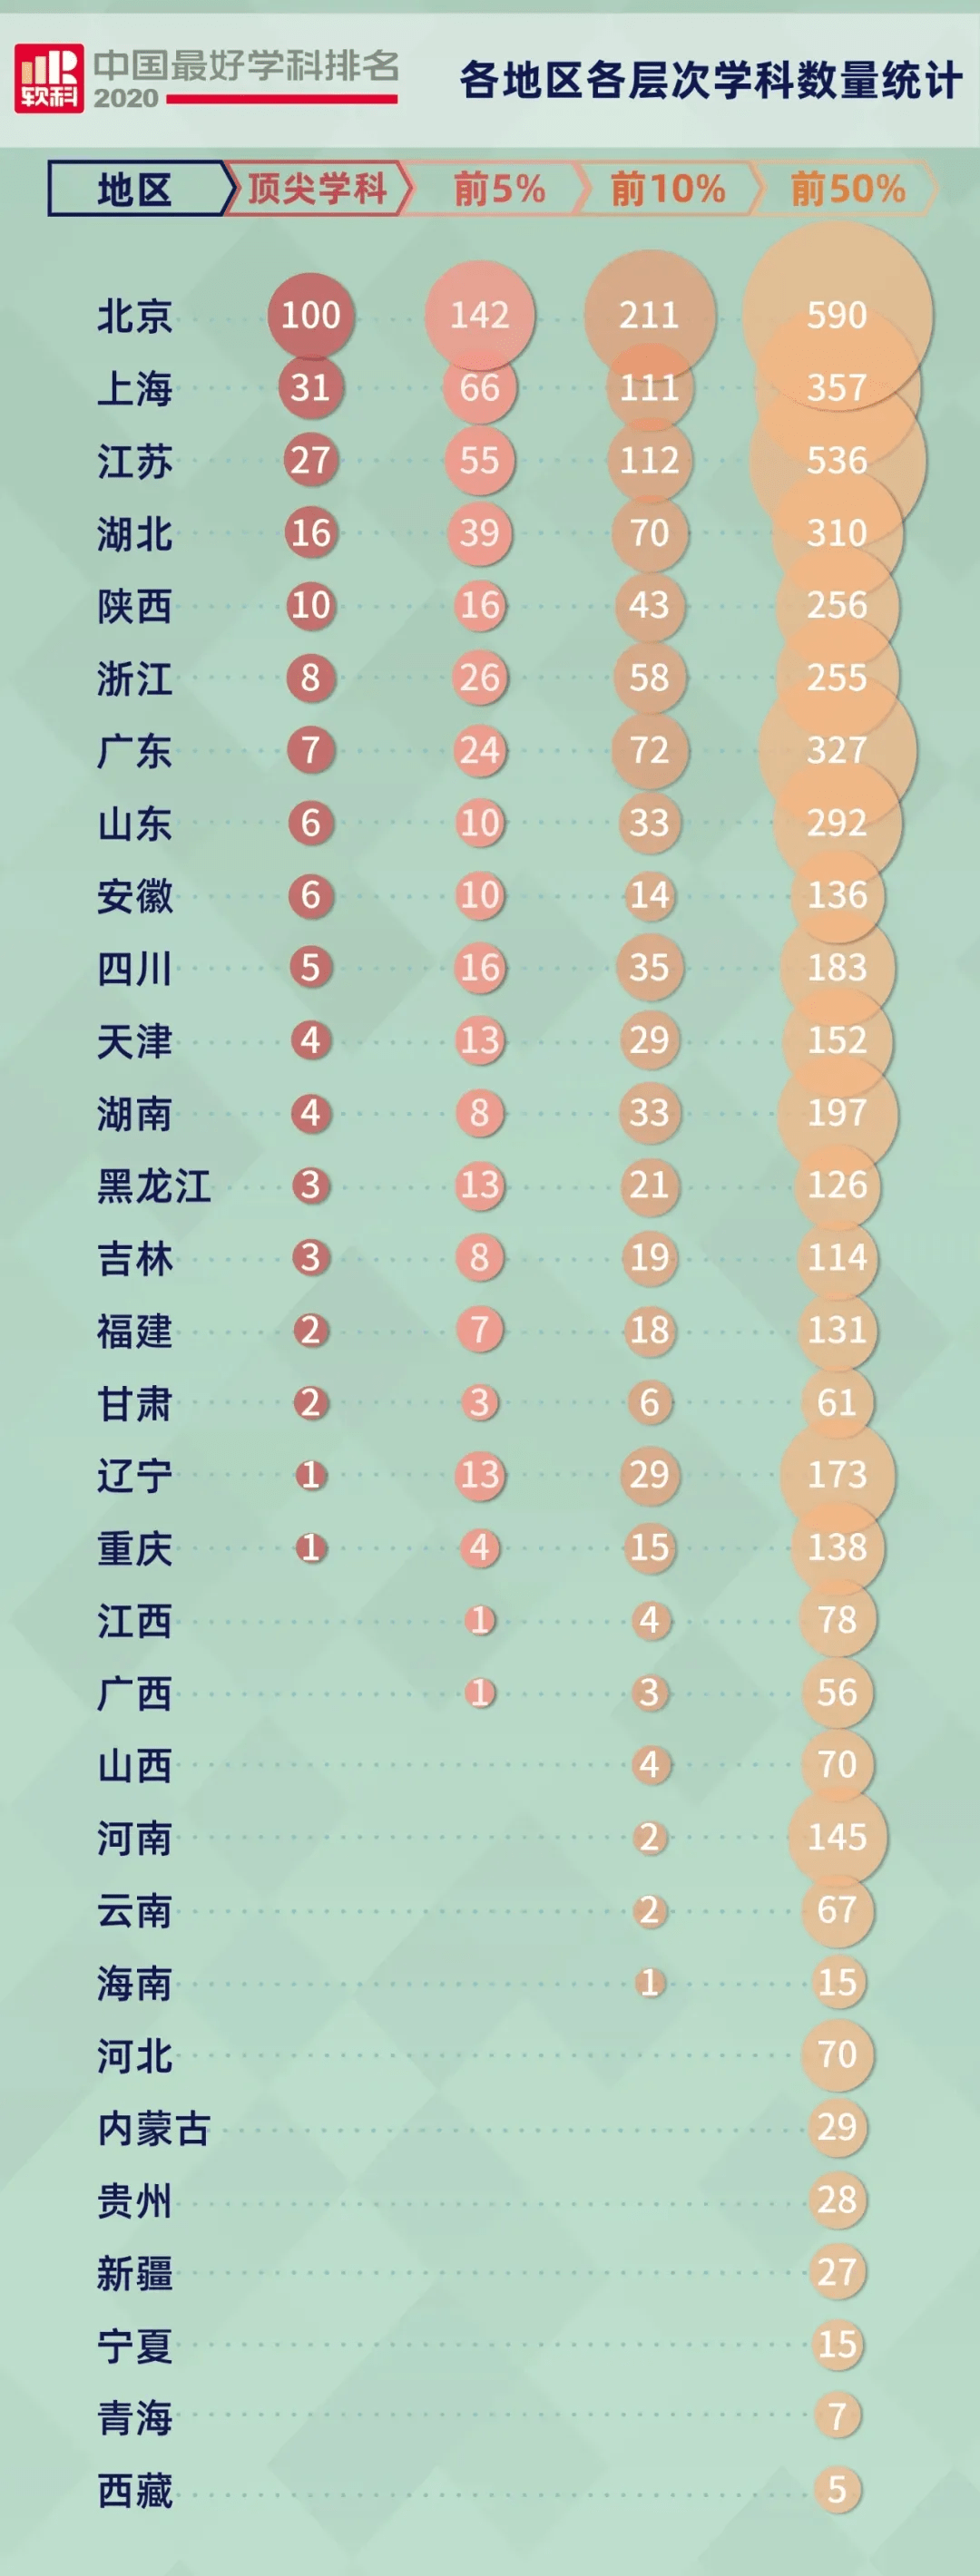 软科最好学科排名-资讯搜索_软科发布2020中国最好学科排名:北大清华并